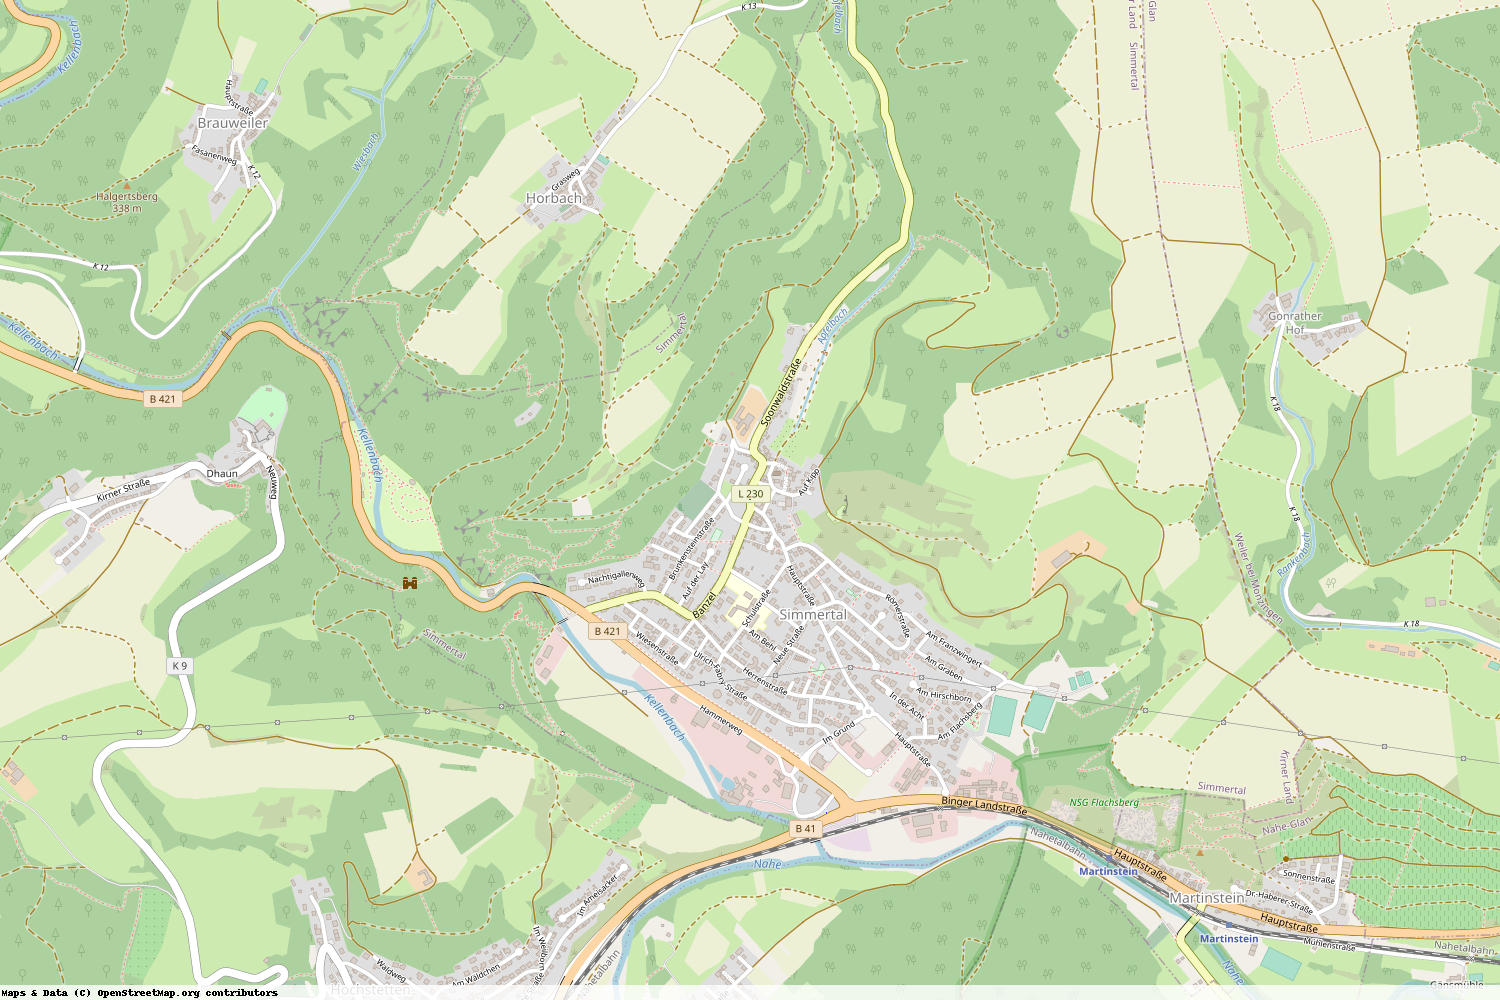 Ist gerade Stromausfall in Rheinland-Pfalz - Bad Kreuznach - Simmertal?